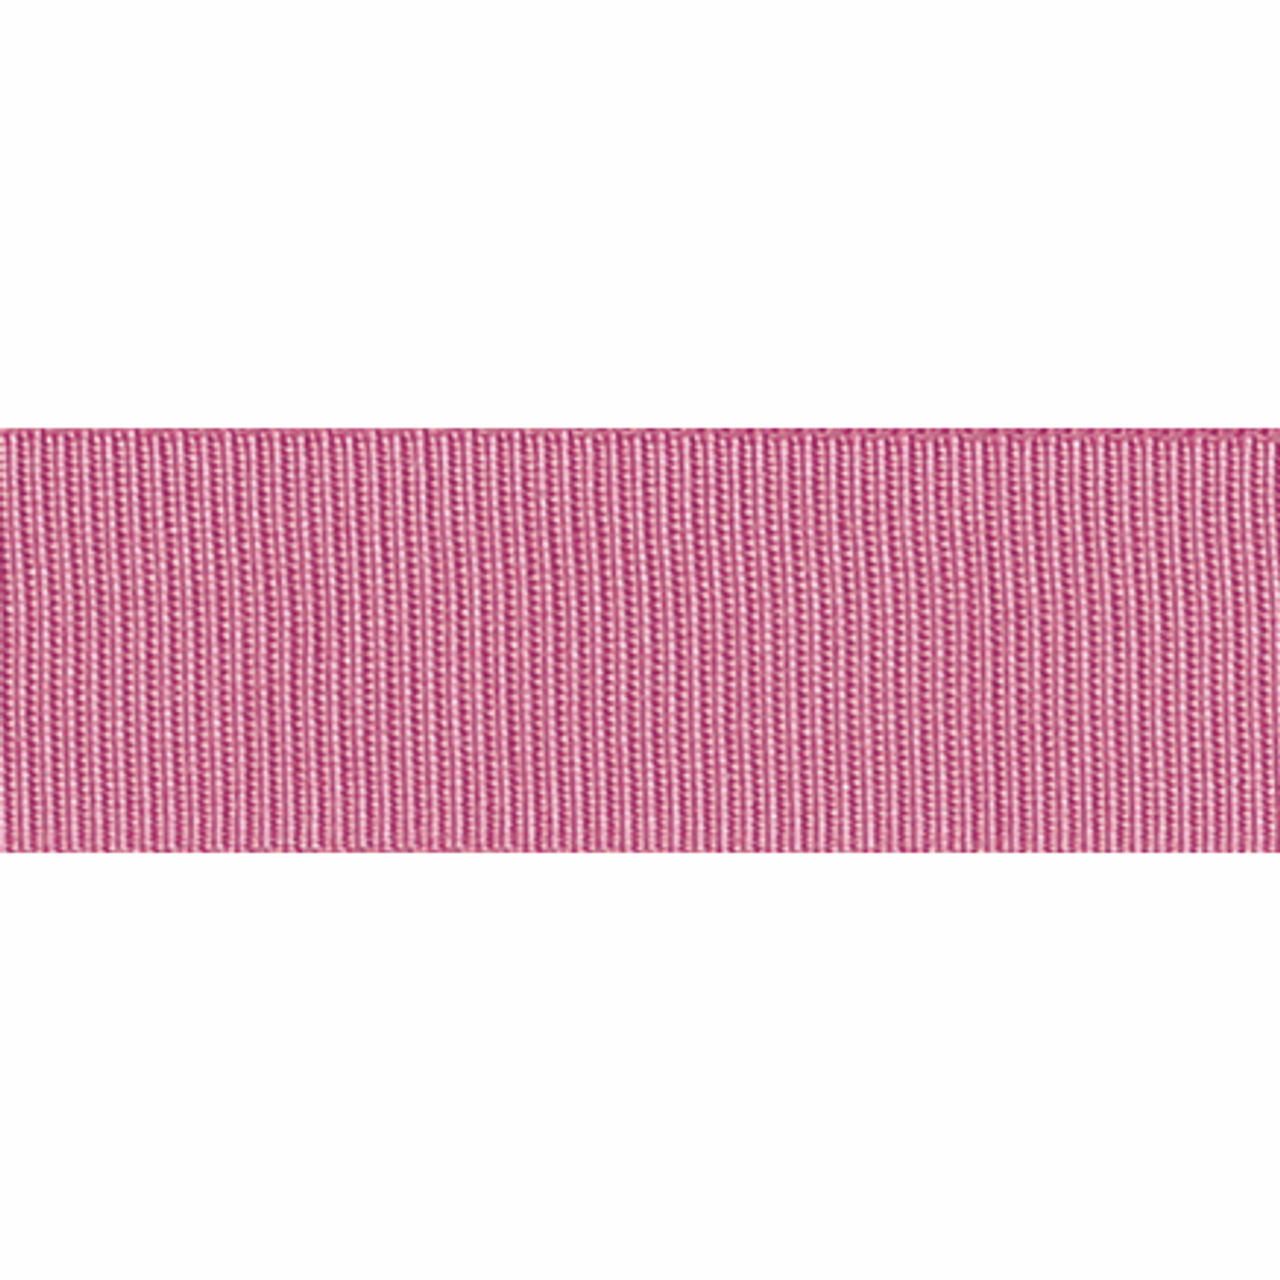 Dusty Pink Grosgrain Ribbon, 40mm wide, Sold Per Metre